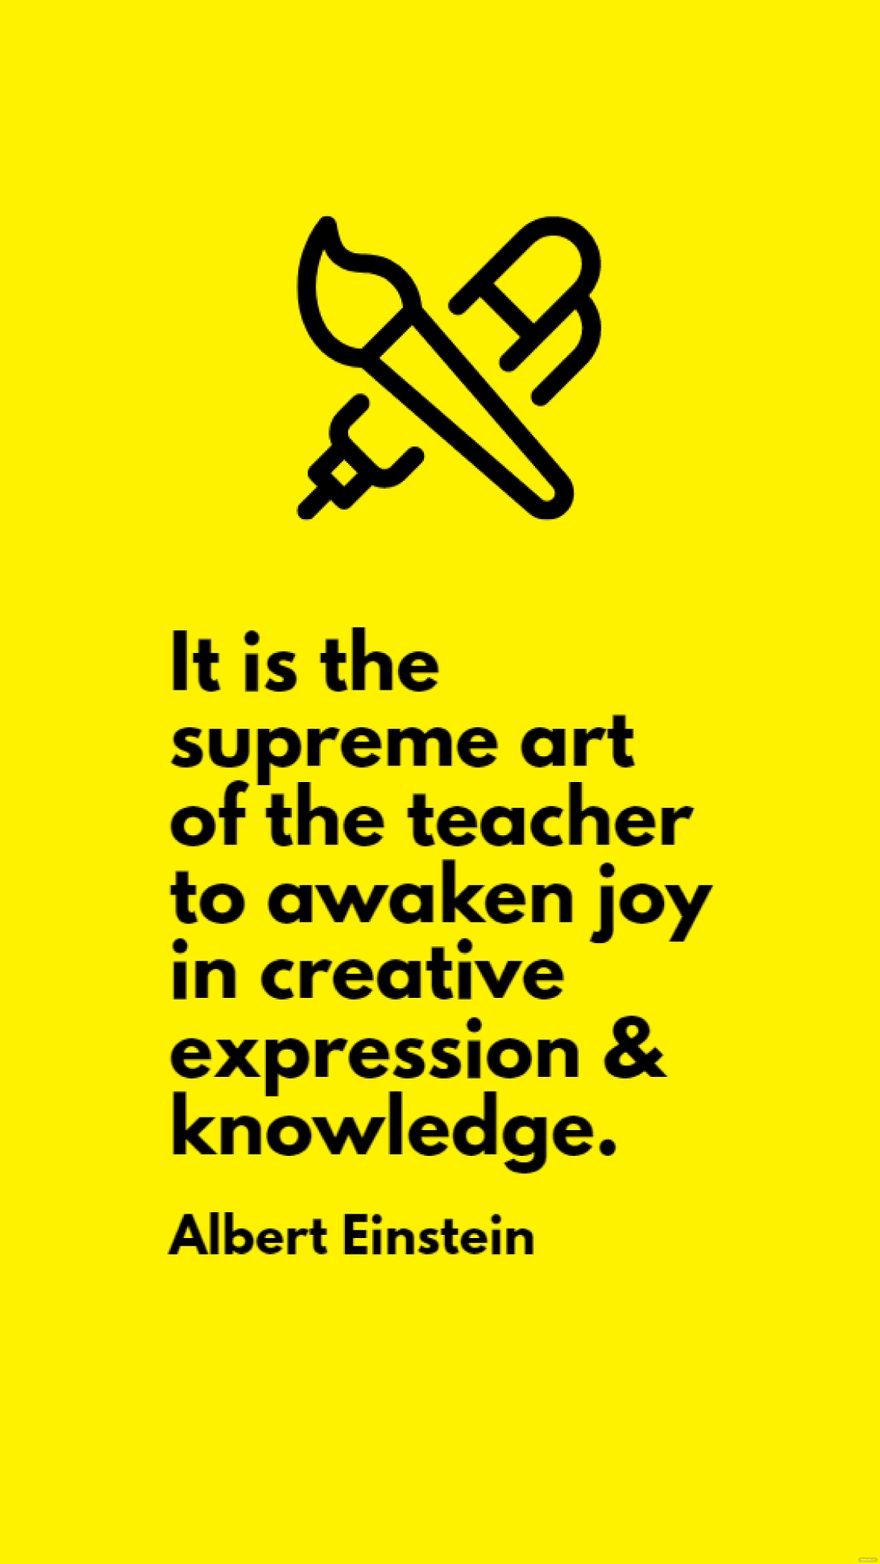 Albert Einstein - It is the supreme art of the teacher to awaken joy in creative expression & knowledge.